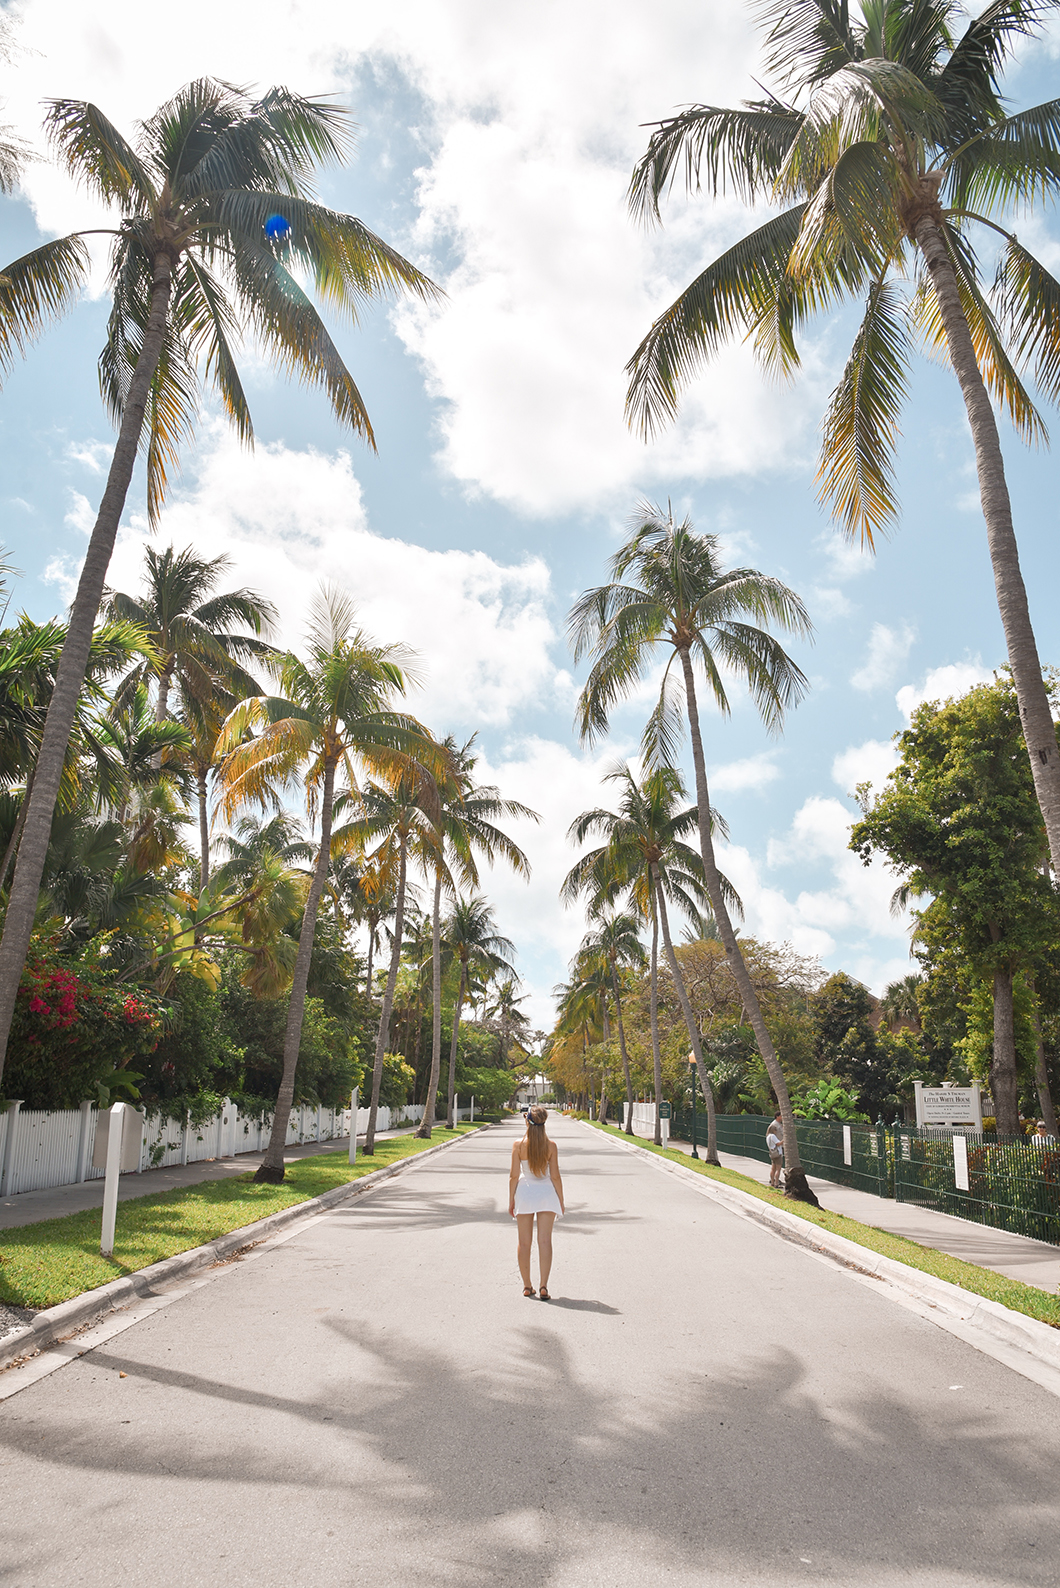 Les palmiers de Key West